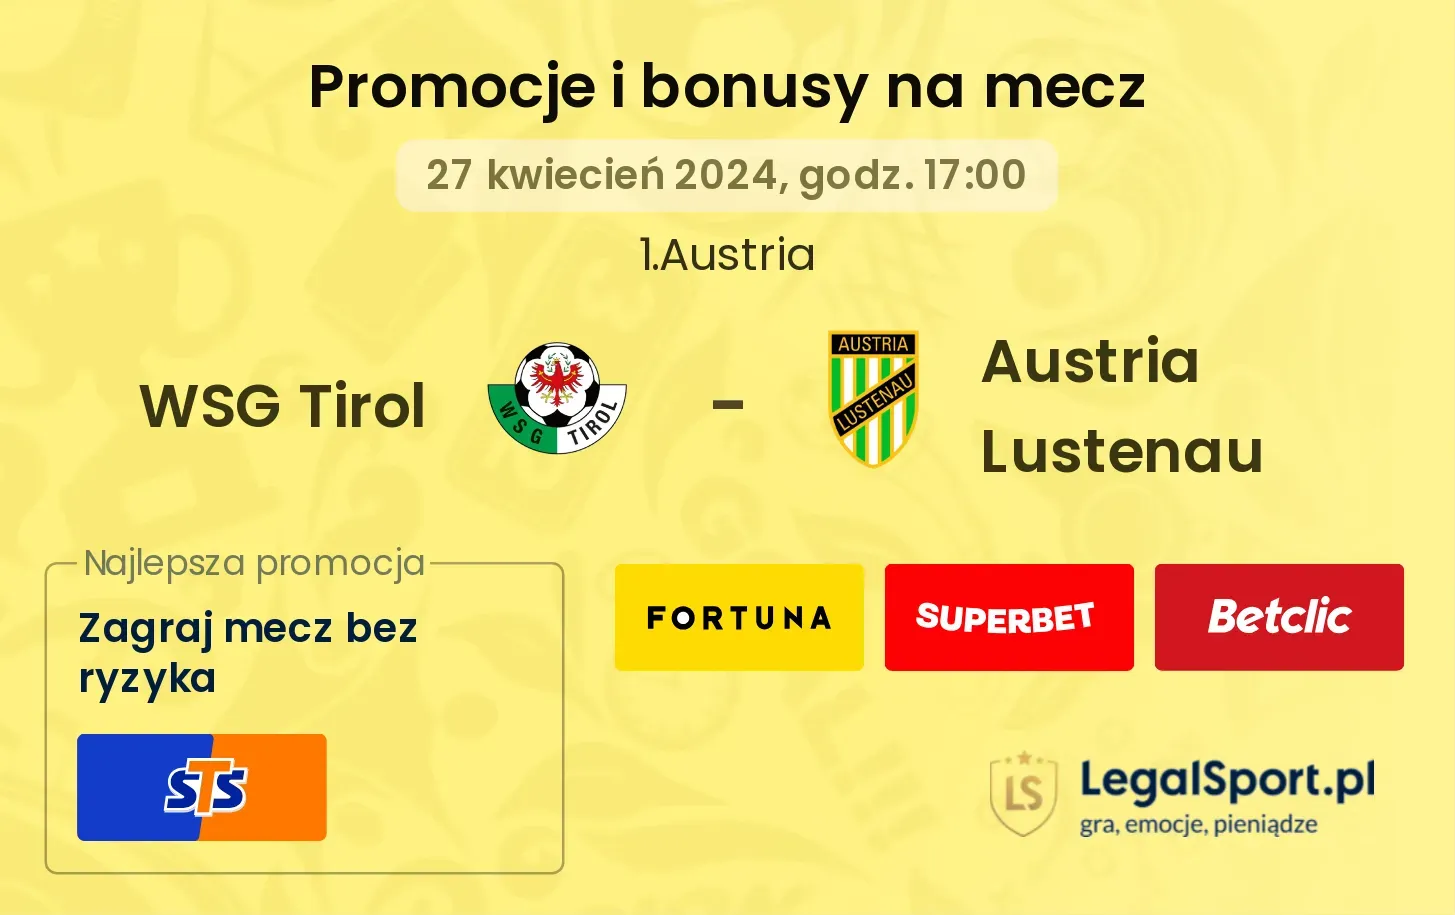 WSG Tirol - Austria Lustenau promocje bonusy na mecz